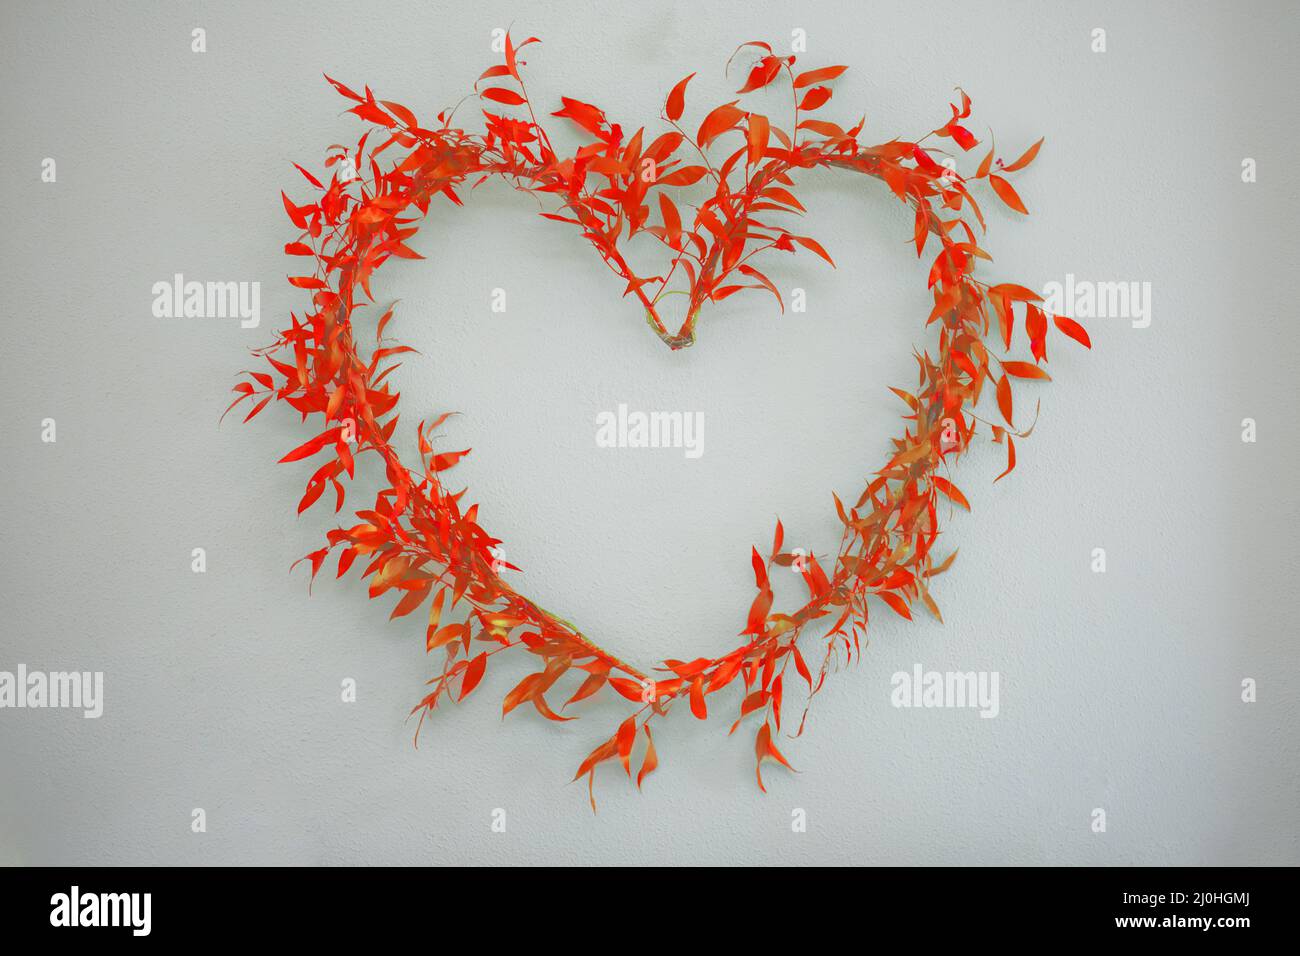 Arrangierte Herz-Symbol der Ruskus Zweige mit roten Blättern auf einem hellen Hintergrund. Stockfoto